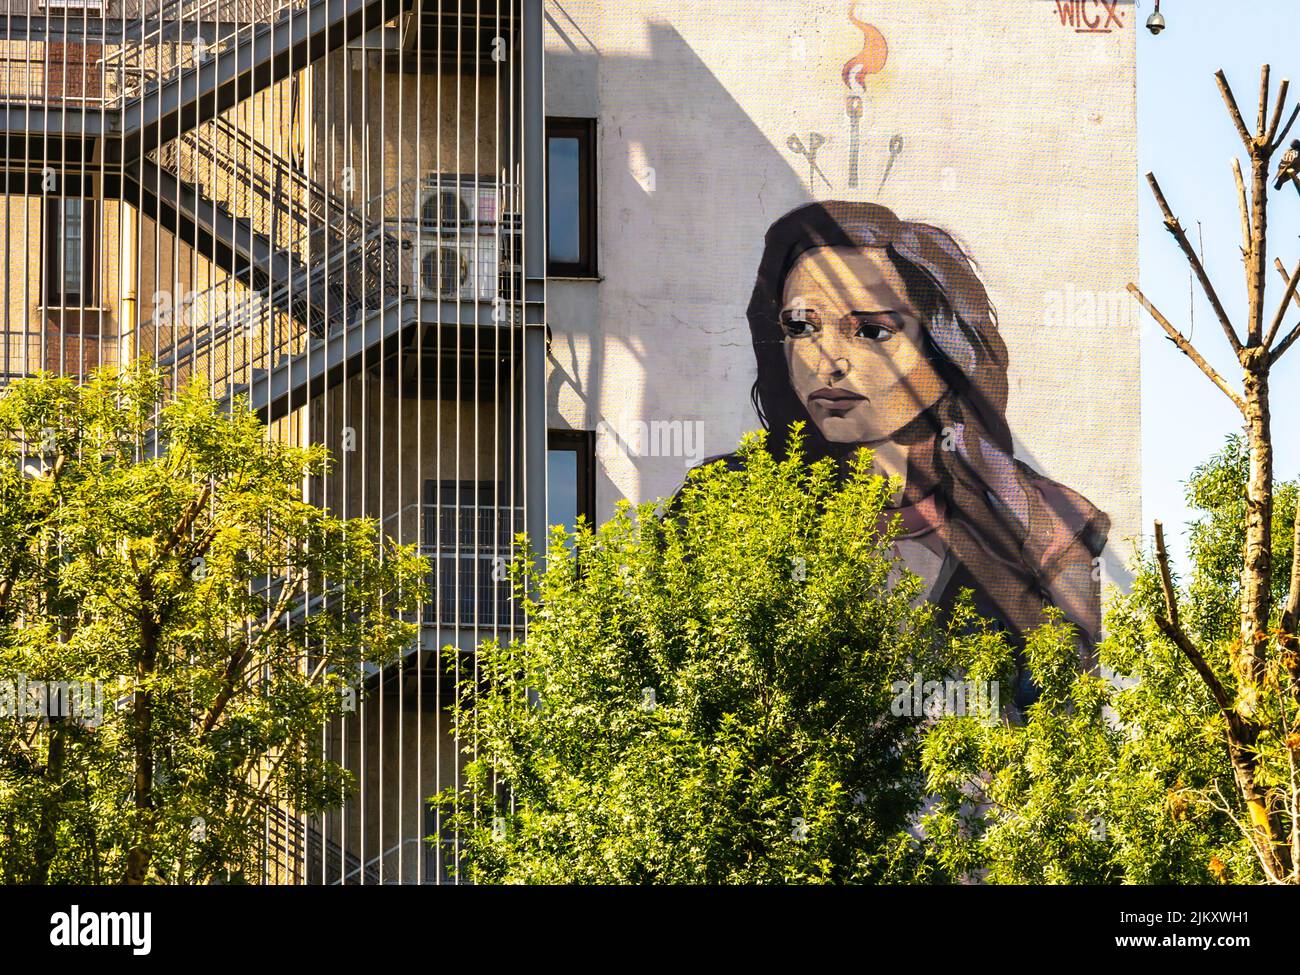 Arte callejero, mural de Wicx que representa a una mujer en el distrito de Kadiköy de Estambul, Turquía Foto de stock